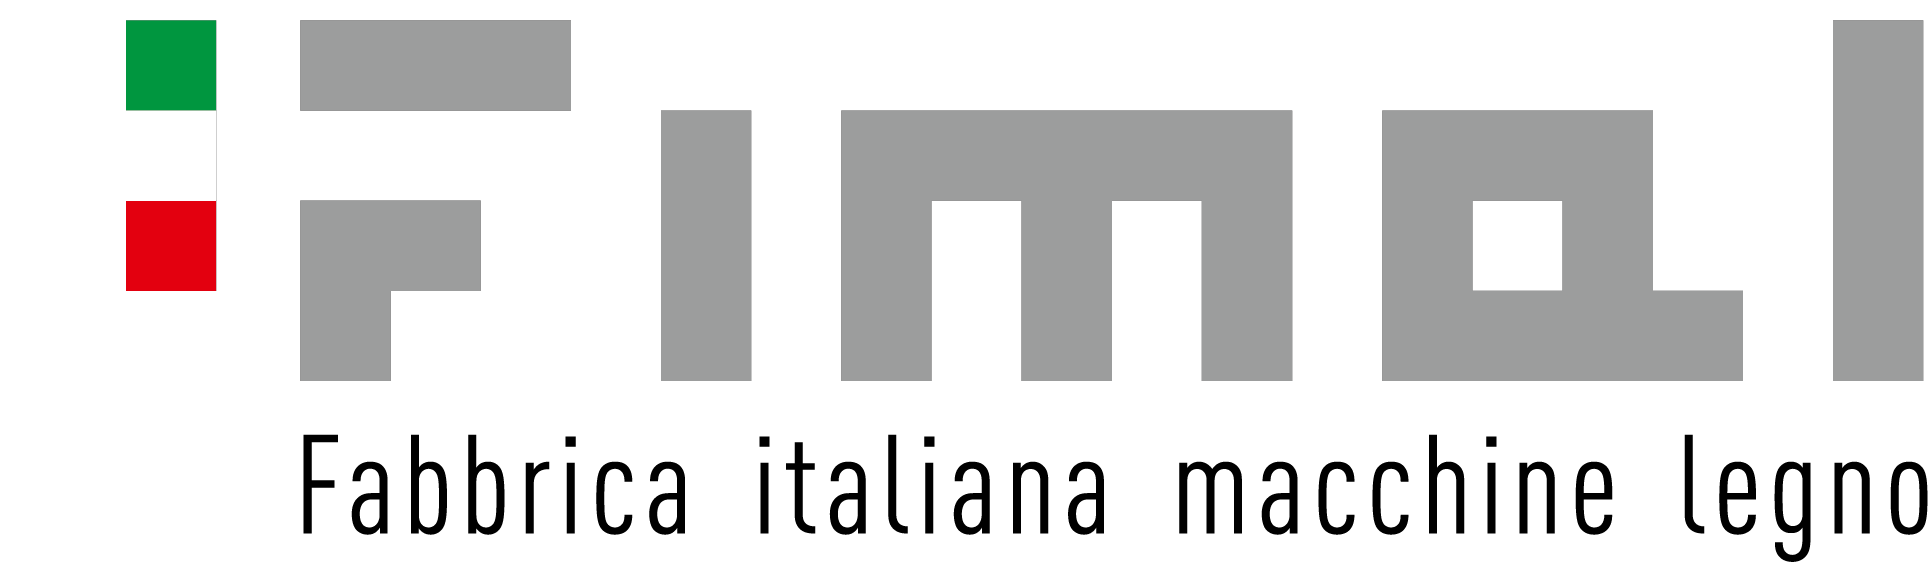 Logo type F I MA L srl